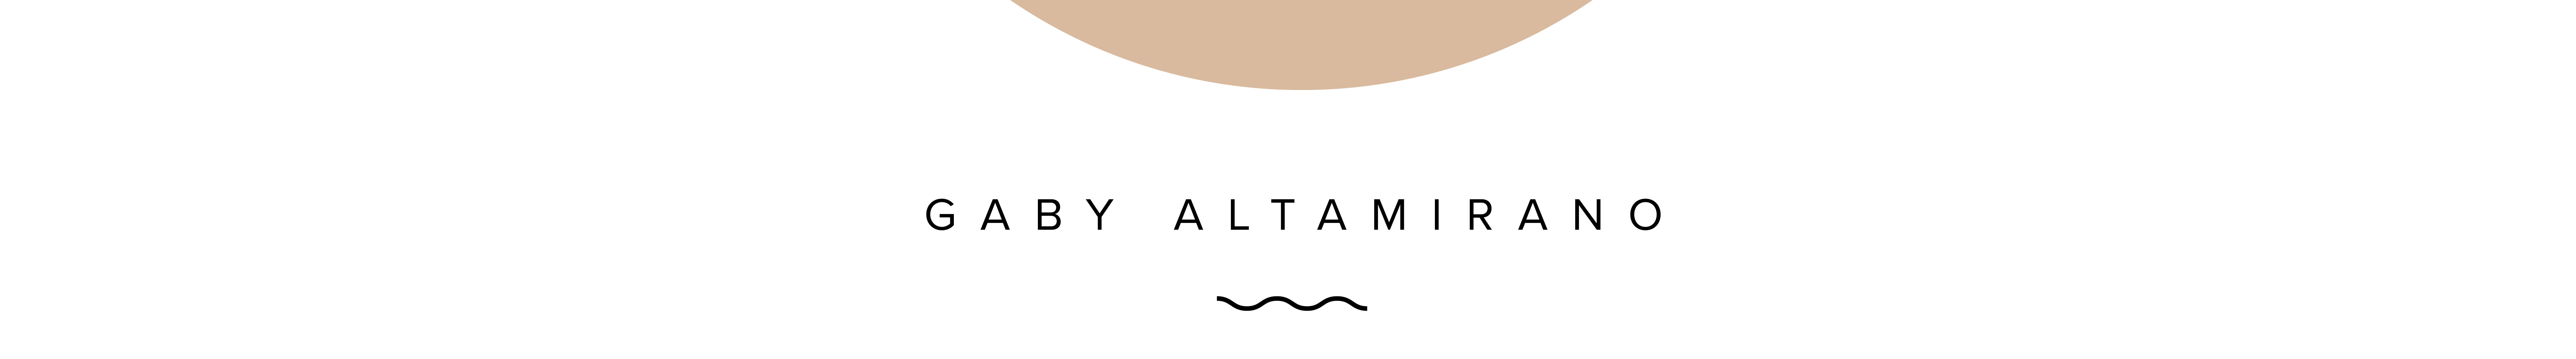 Gaby Altamirano's profile banner